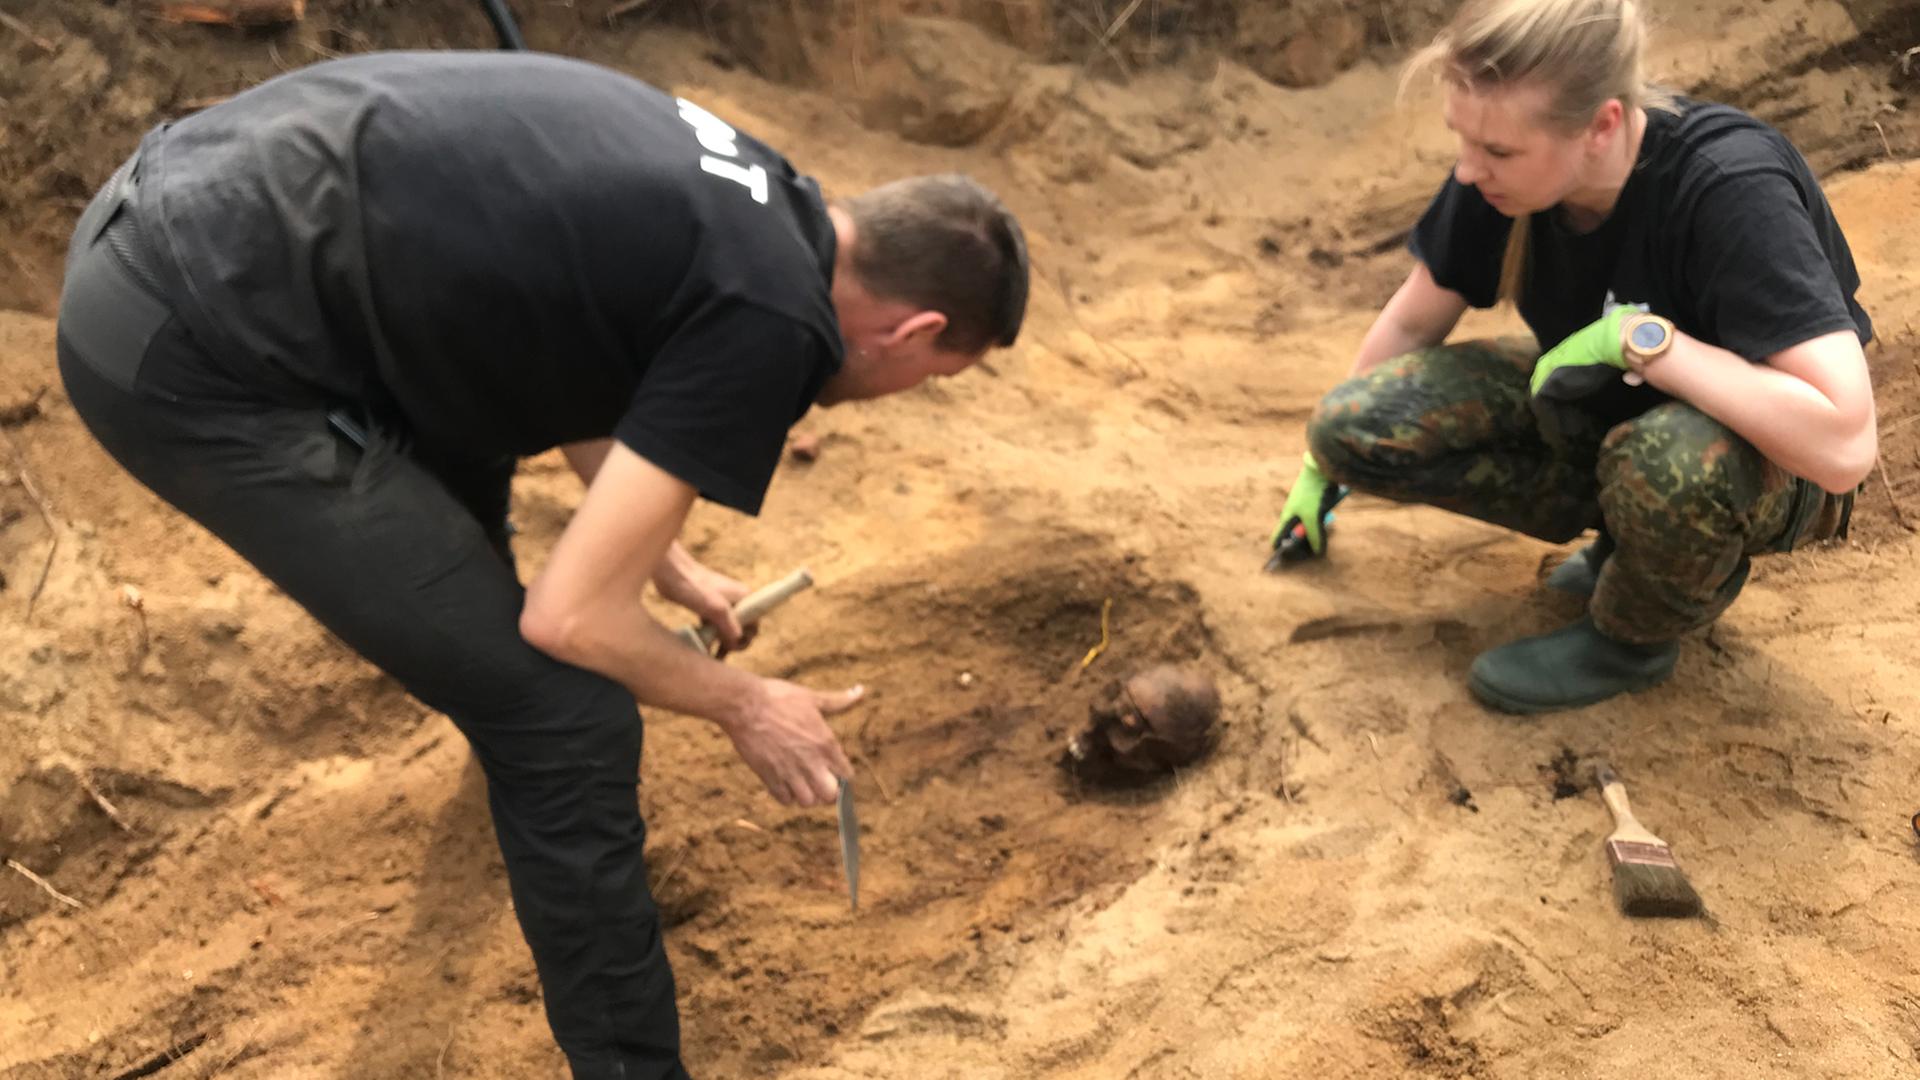 Symbolbild: Ein Mann und eine Frau arbeiten in einer ausgehobenen Grube und sichern Überreste von Kriegstoten. In der Grube sind unter anderem ein gefundener Schädel und ein Pinsel zu sehen.